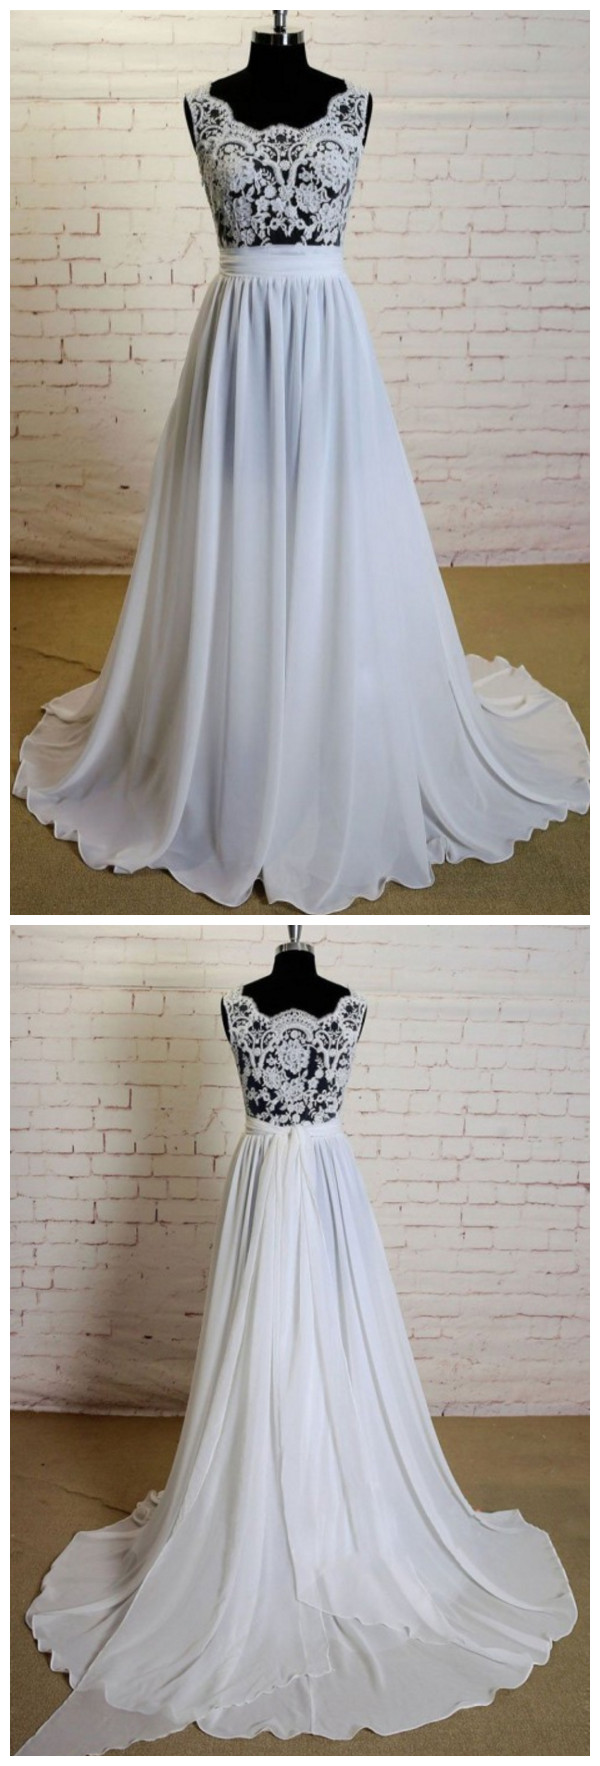 Ivory Wedding Dress, Chiffon Wedding Dress, Lace Wedding Dress